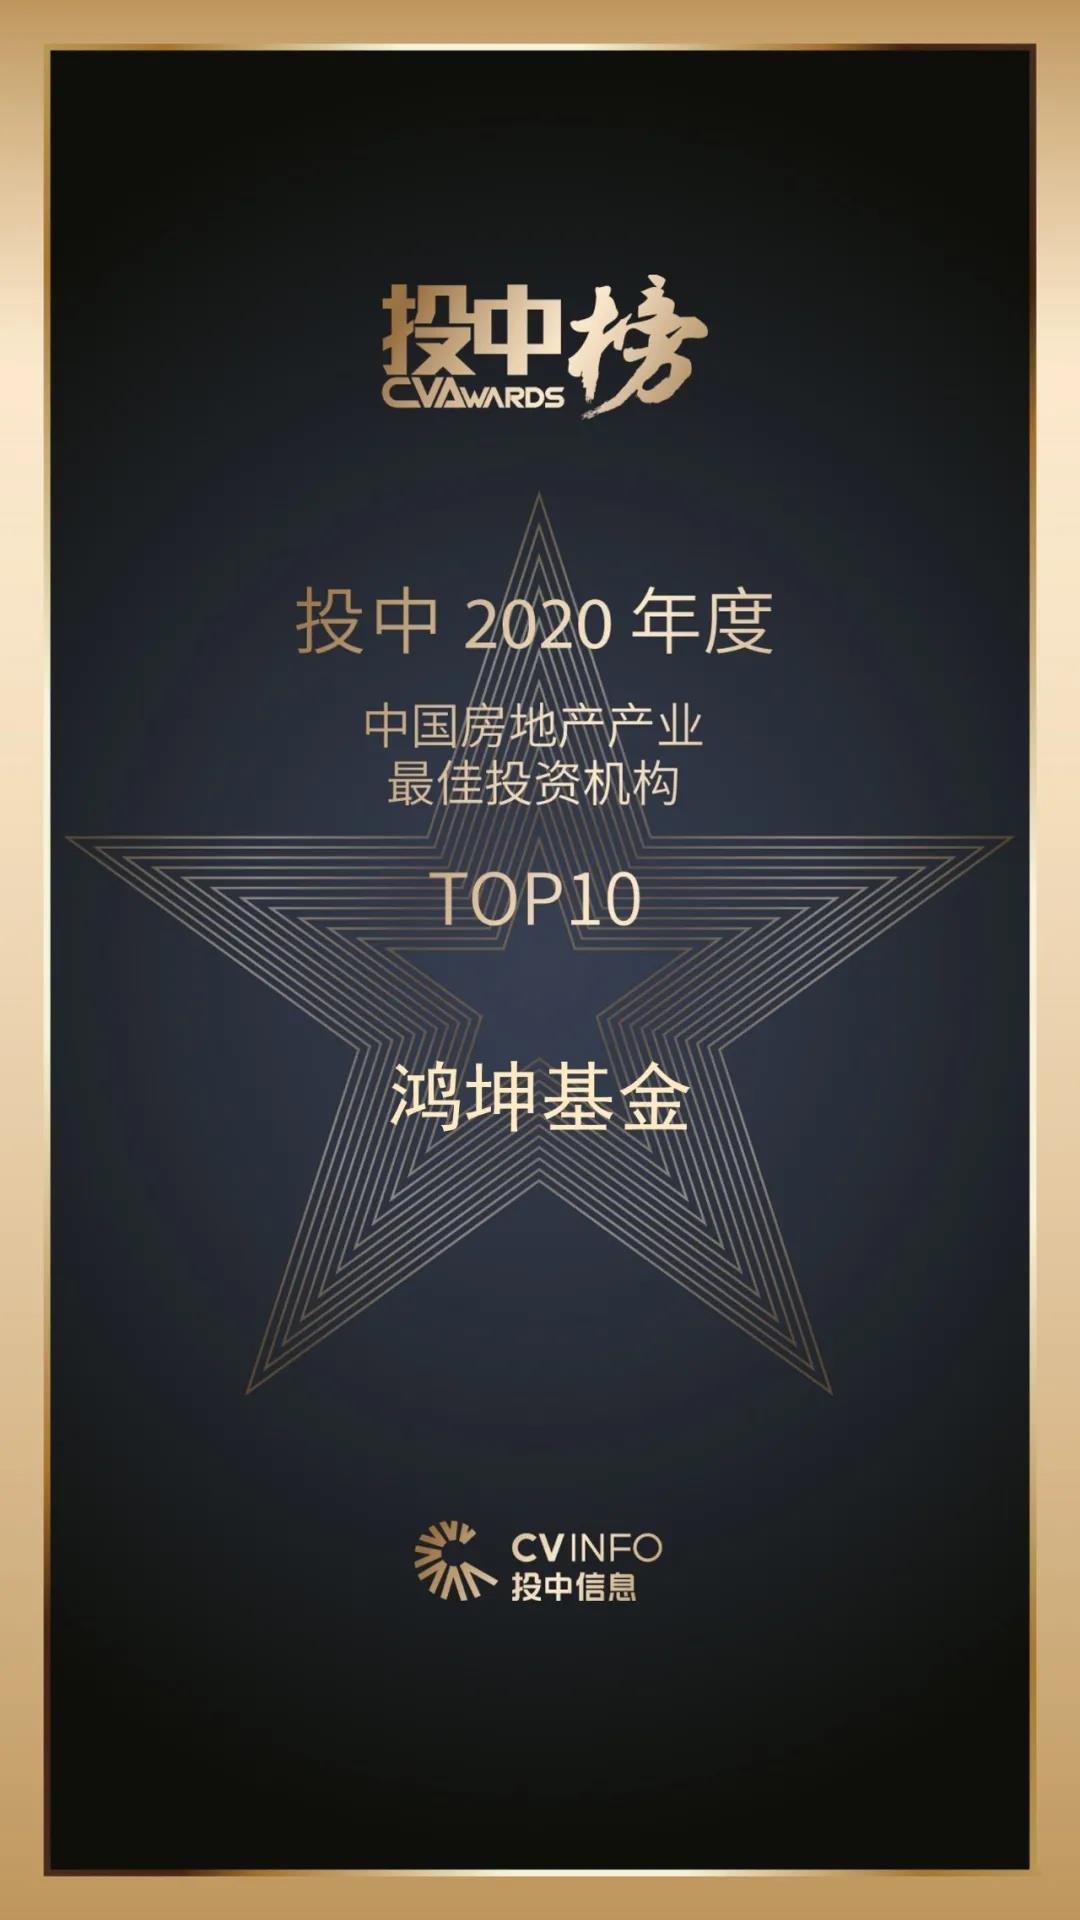 鸿坤基金获2020年度中国房地产产业最佳投资机构10强荣誉.jpg